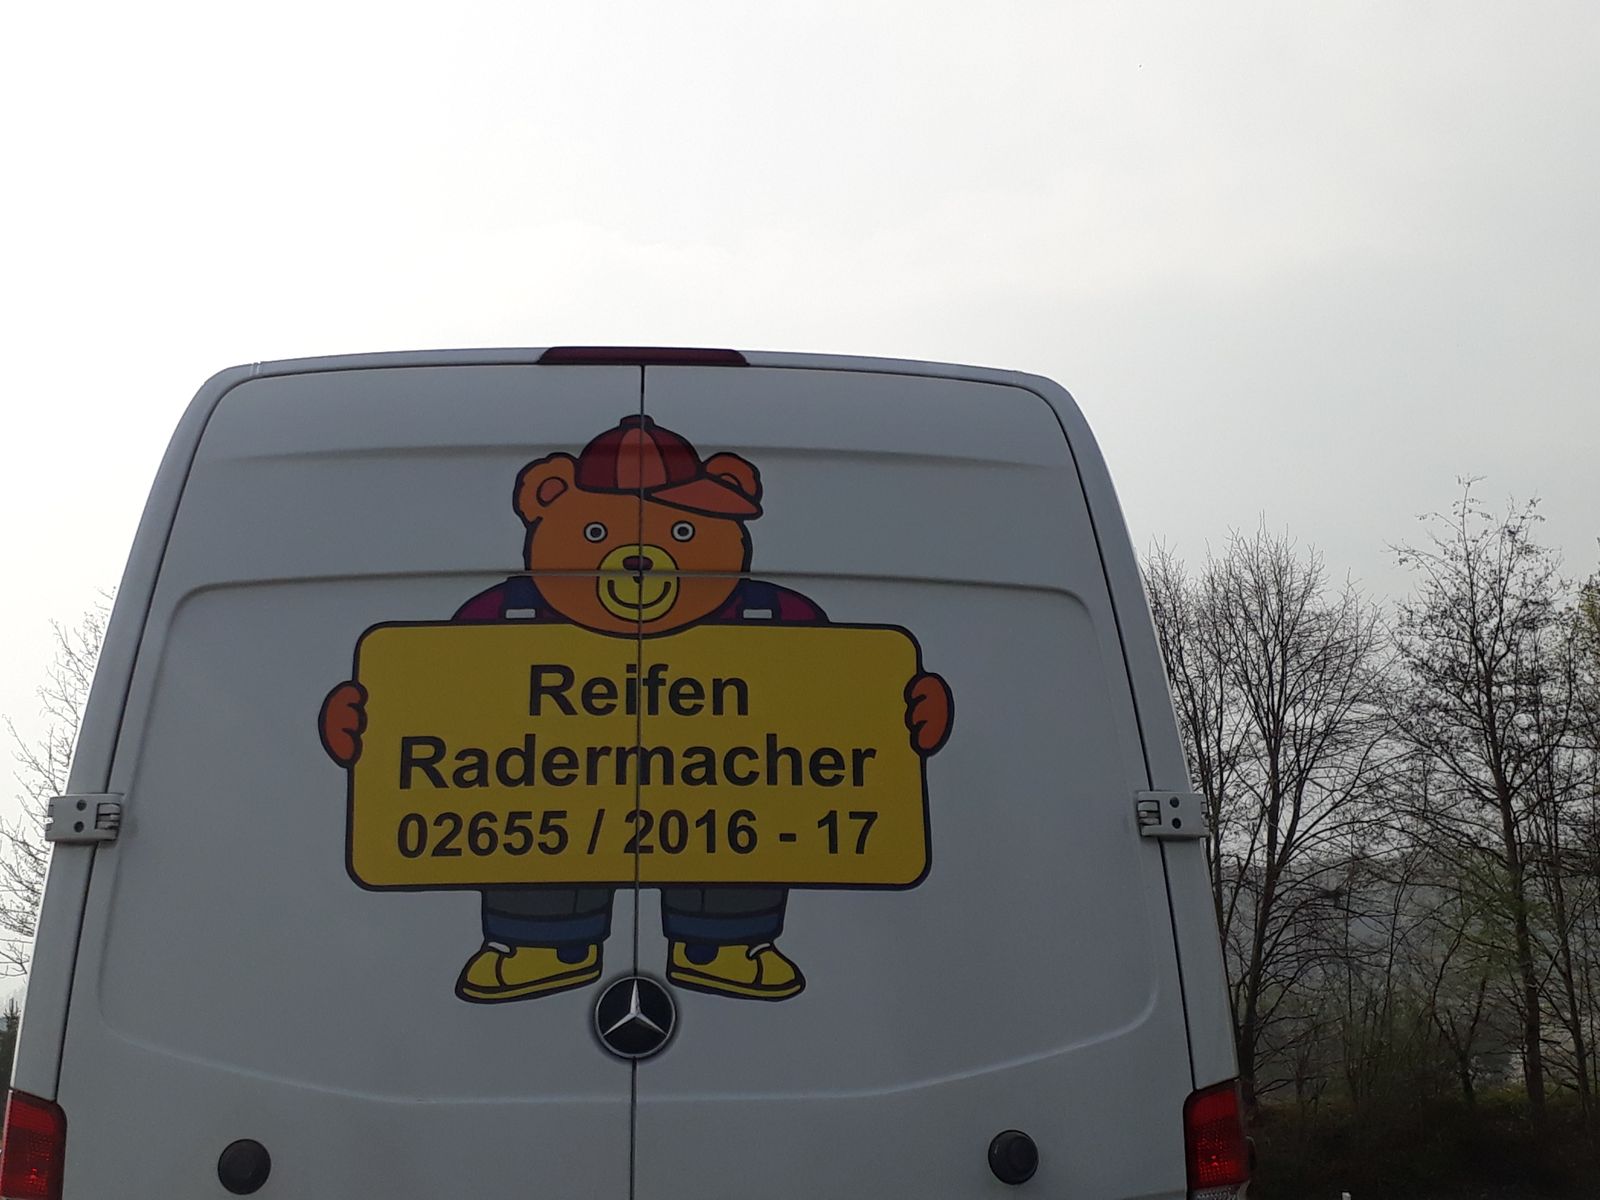 Reifen Radermacher GmbH in Kempenich ⇒ in Das Örtliche